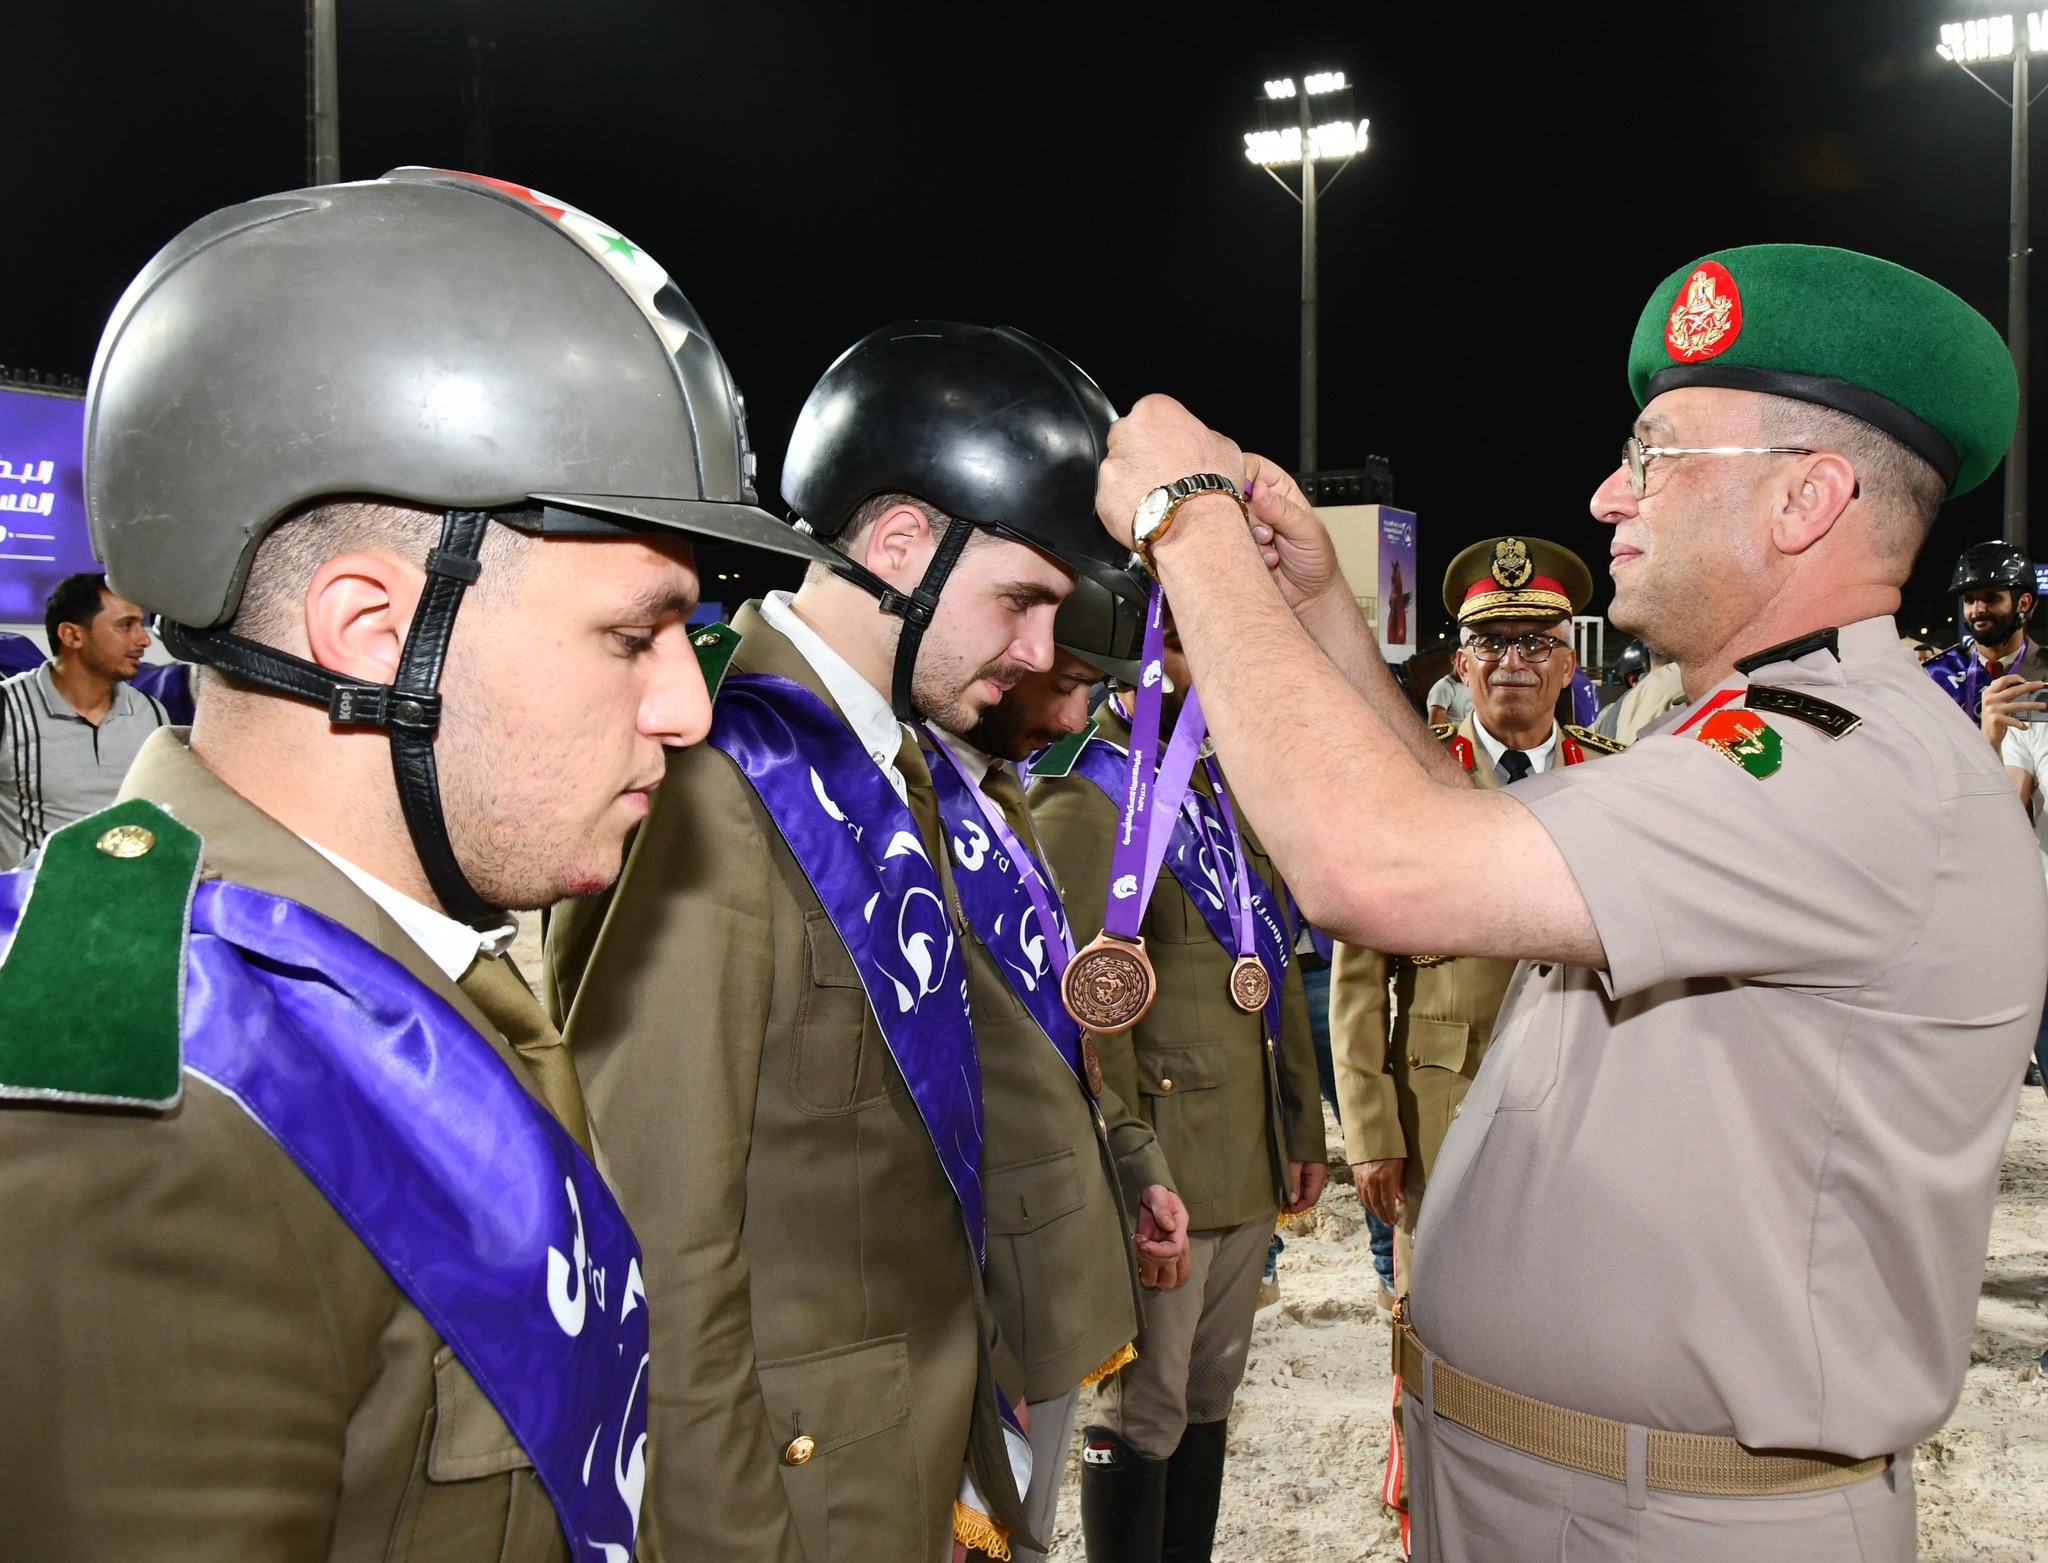 انطلاق فعاليات البطولة العربية العسكرية للفروسية بنادى الفروسية شاهد الصور - بوابة البلد